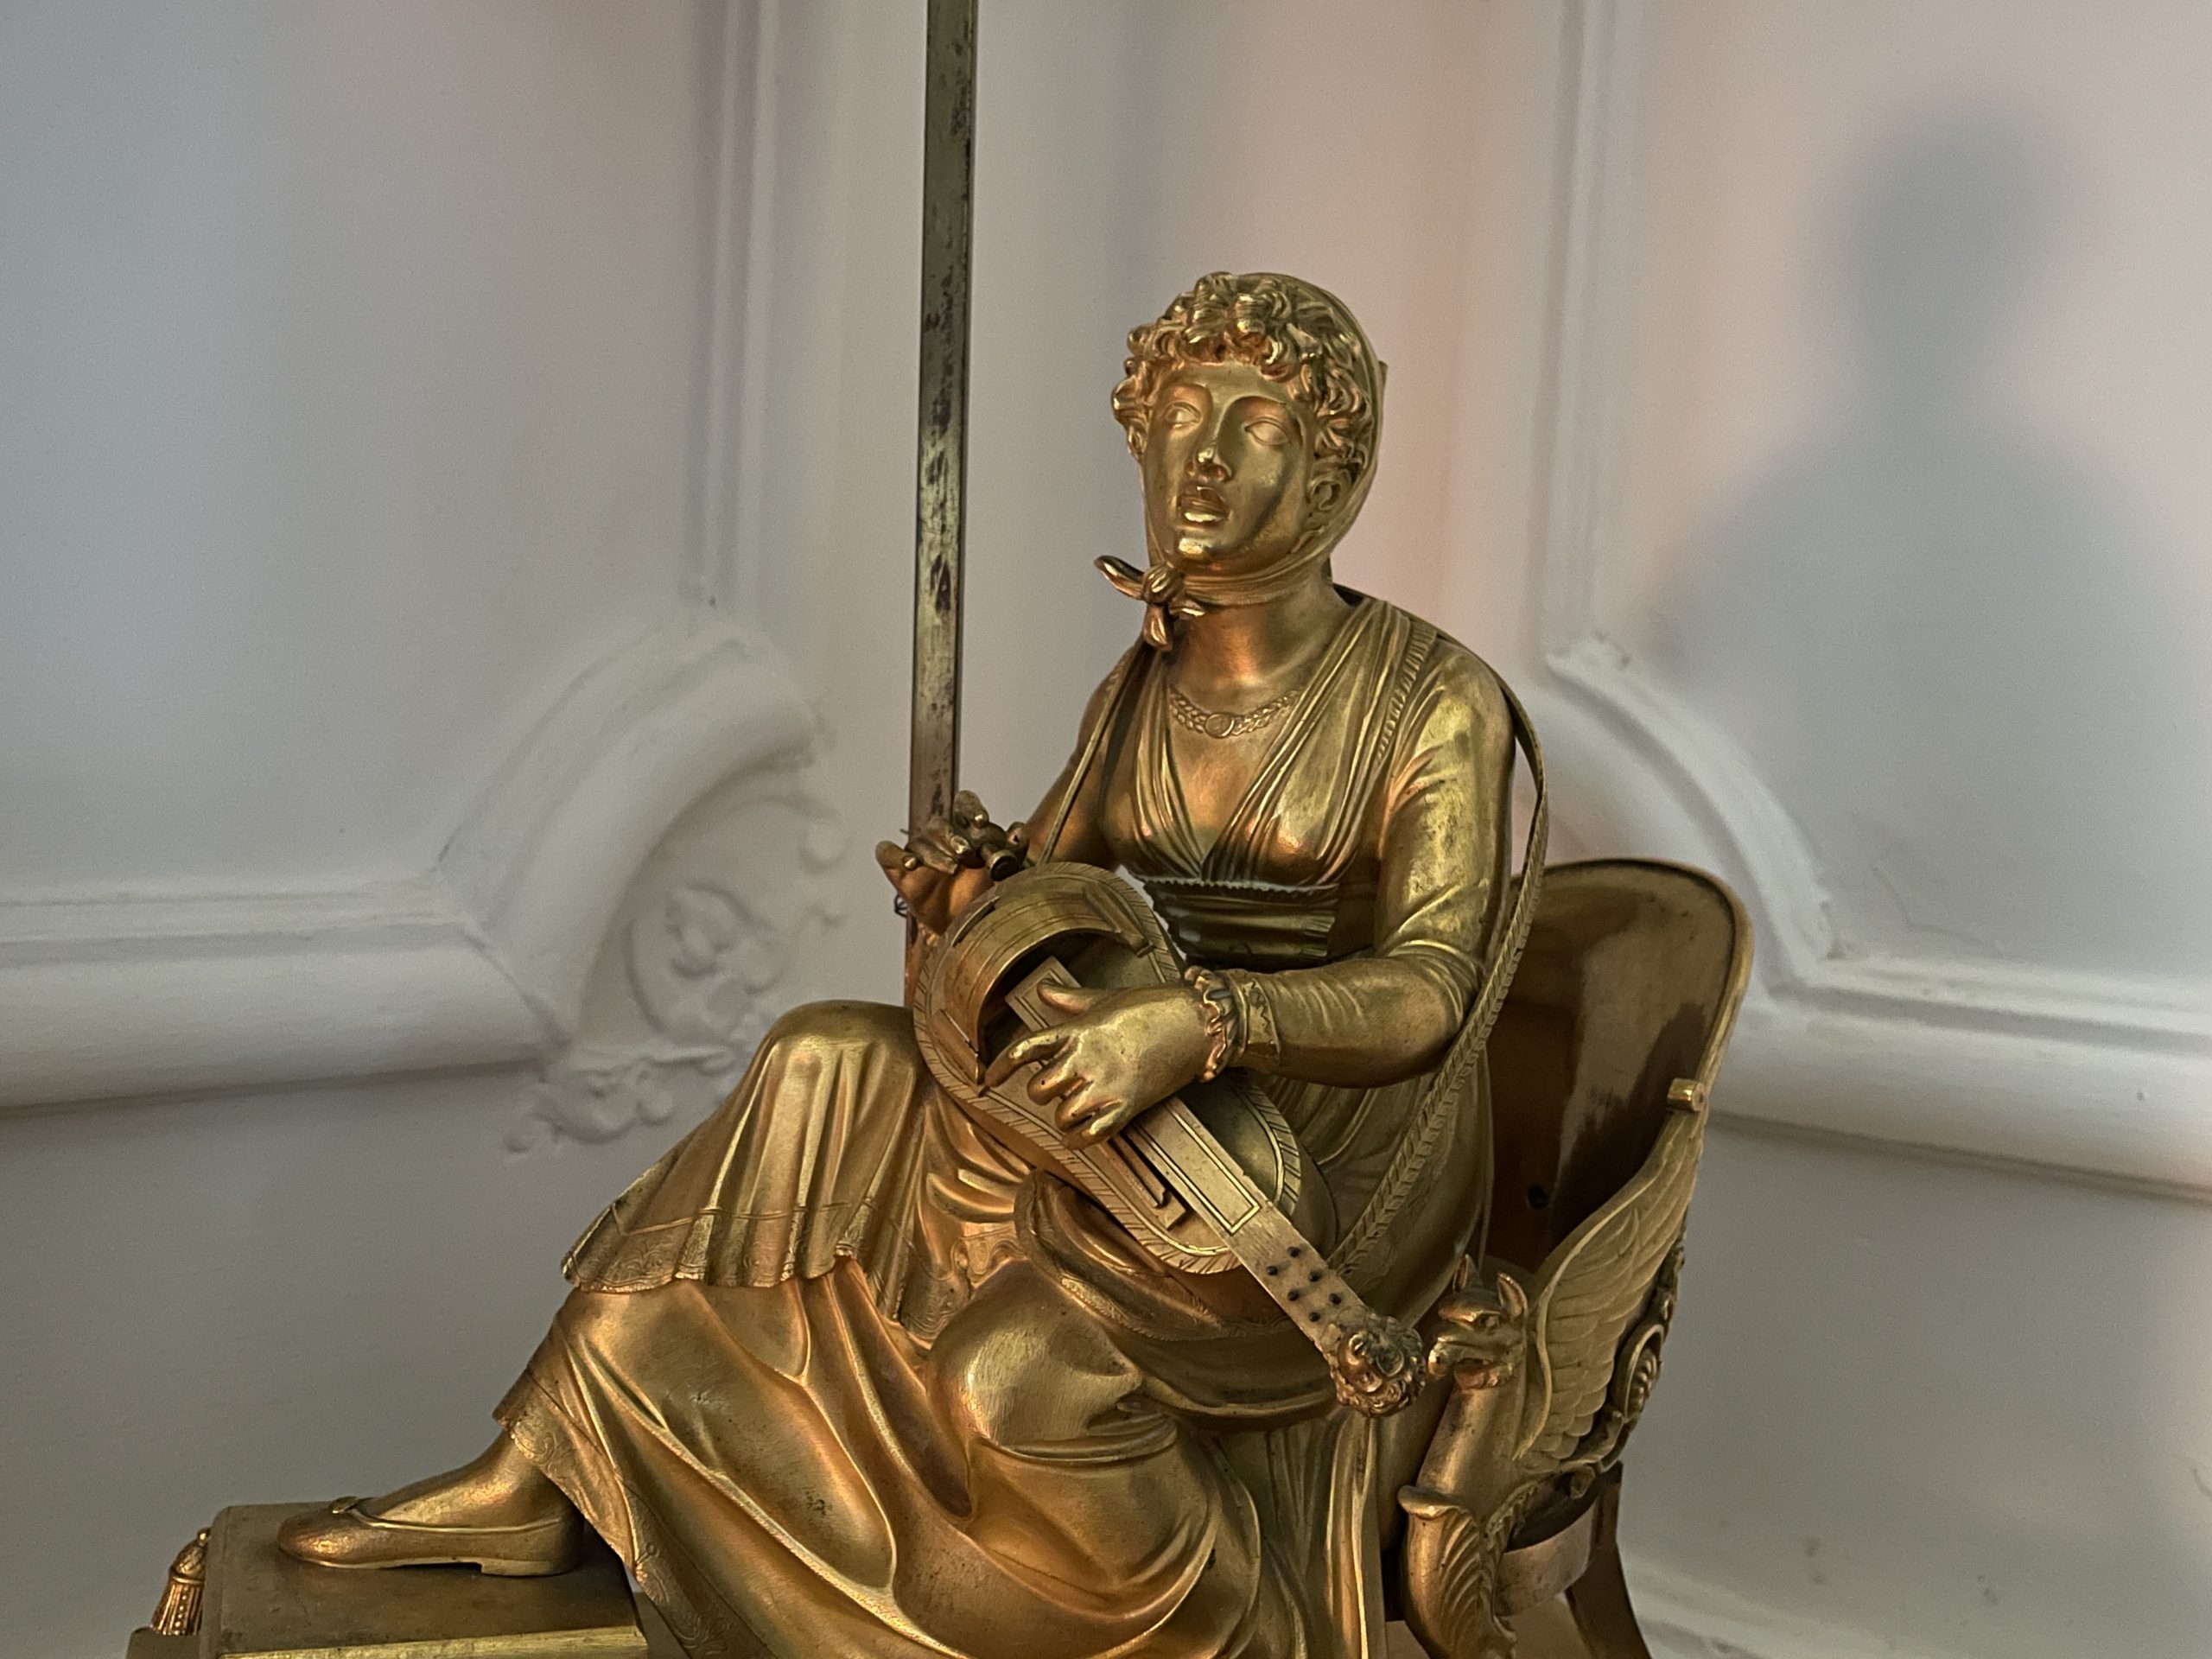 Fanchon-vieilleuse-bronze-doré-vielle-instrument-ciselé-xixe-antiquaire-antiquité-aurore-morisse-chestret5-liège2